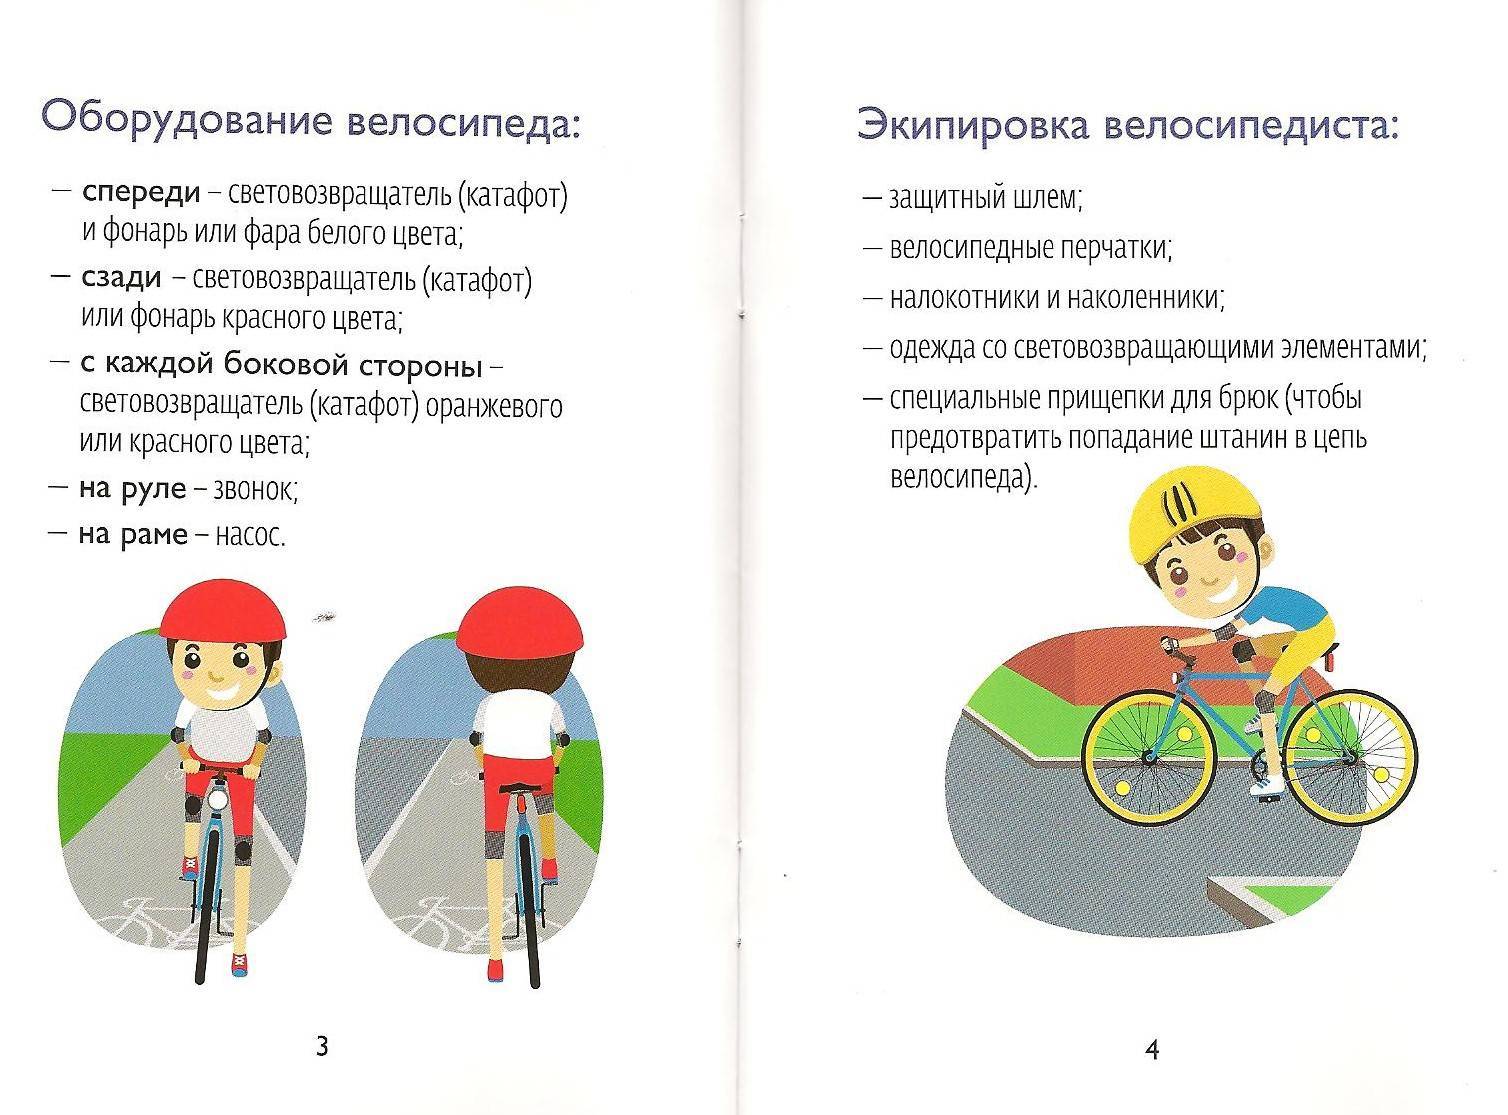 Правила дорожного движения для велосипедистов — общественный велоконтроль